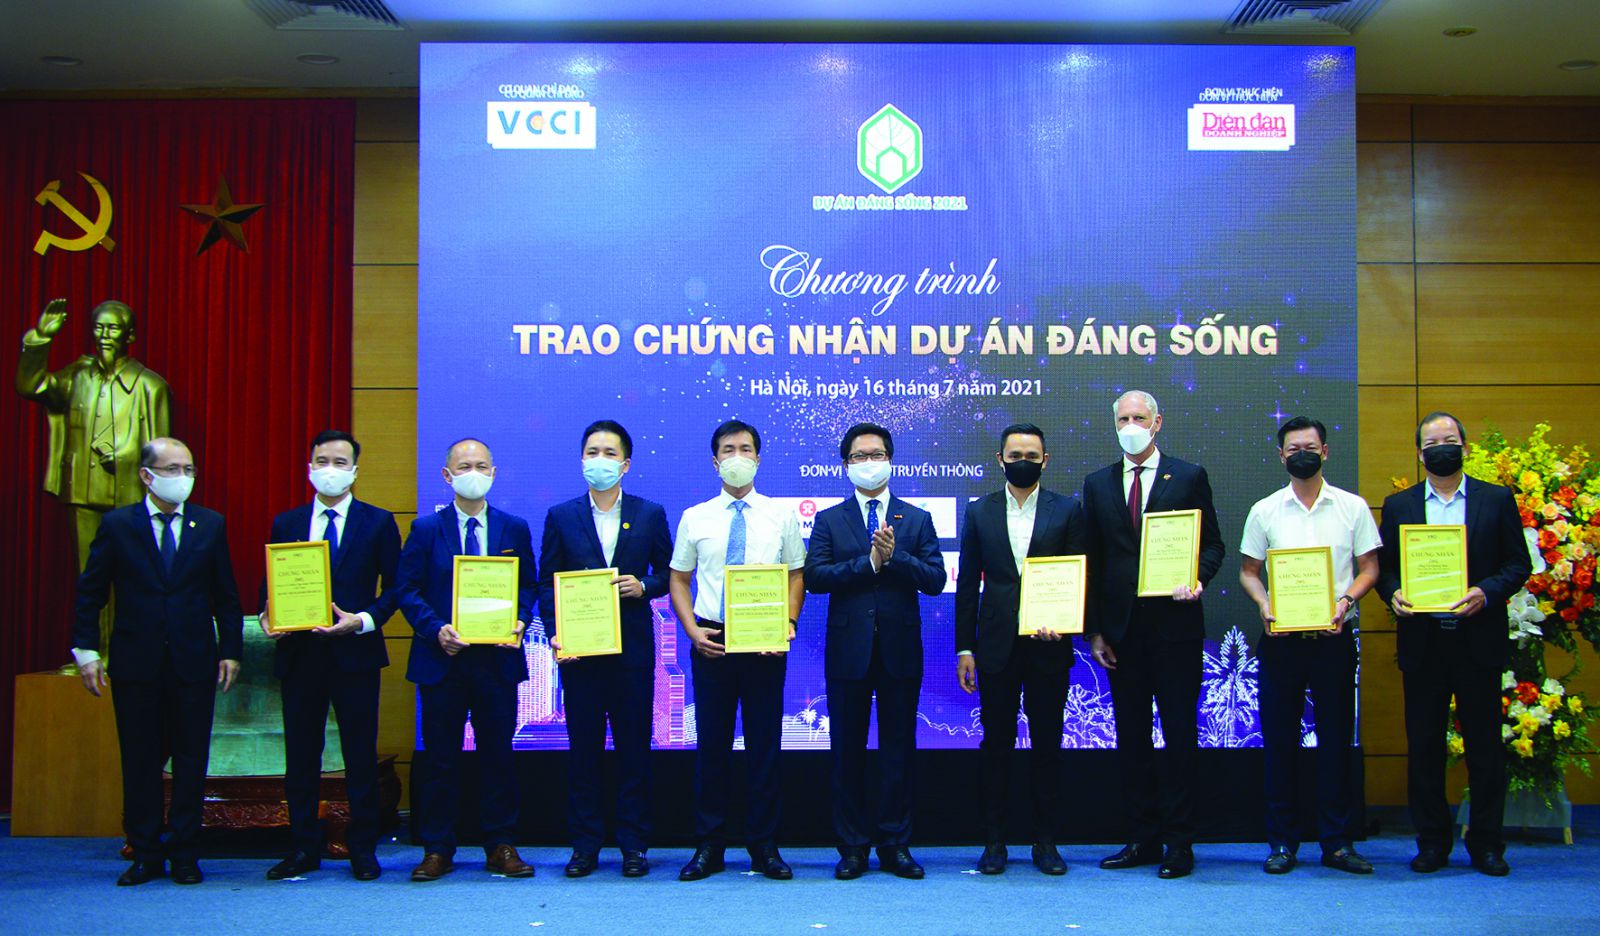 Tiến sỹ Vũ Tiến Lộc - Chủ tịch Phòng Thương mại và Công nghiệp Việt Nam (VCCI) và Nhà báo Phạm Ngọc Tuấn - Tổng biên tập Tạp chí Diễn đàn Doanh nghiệp trao chứng nhận và kỷ niệm chương cho các đại diện các nhà phát triển dự án nhận chứng nhận Nhà phát triển dự án đáng sống 2021.